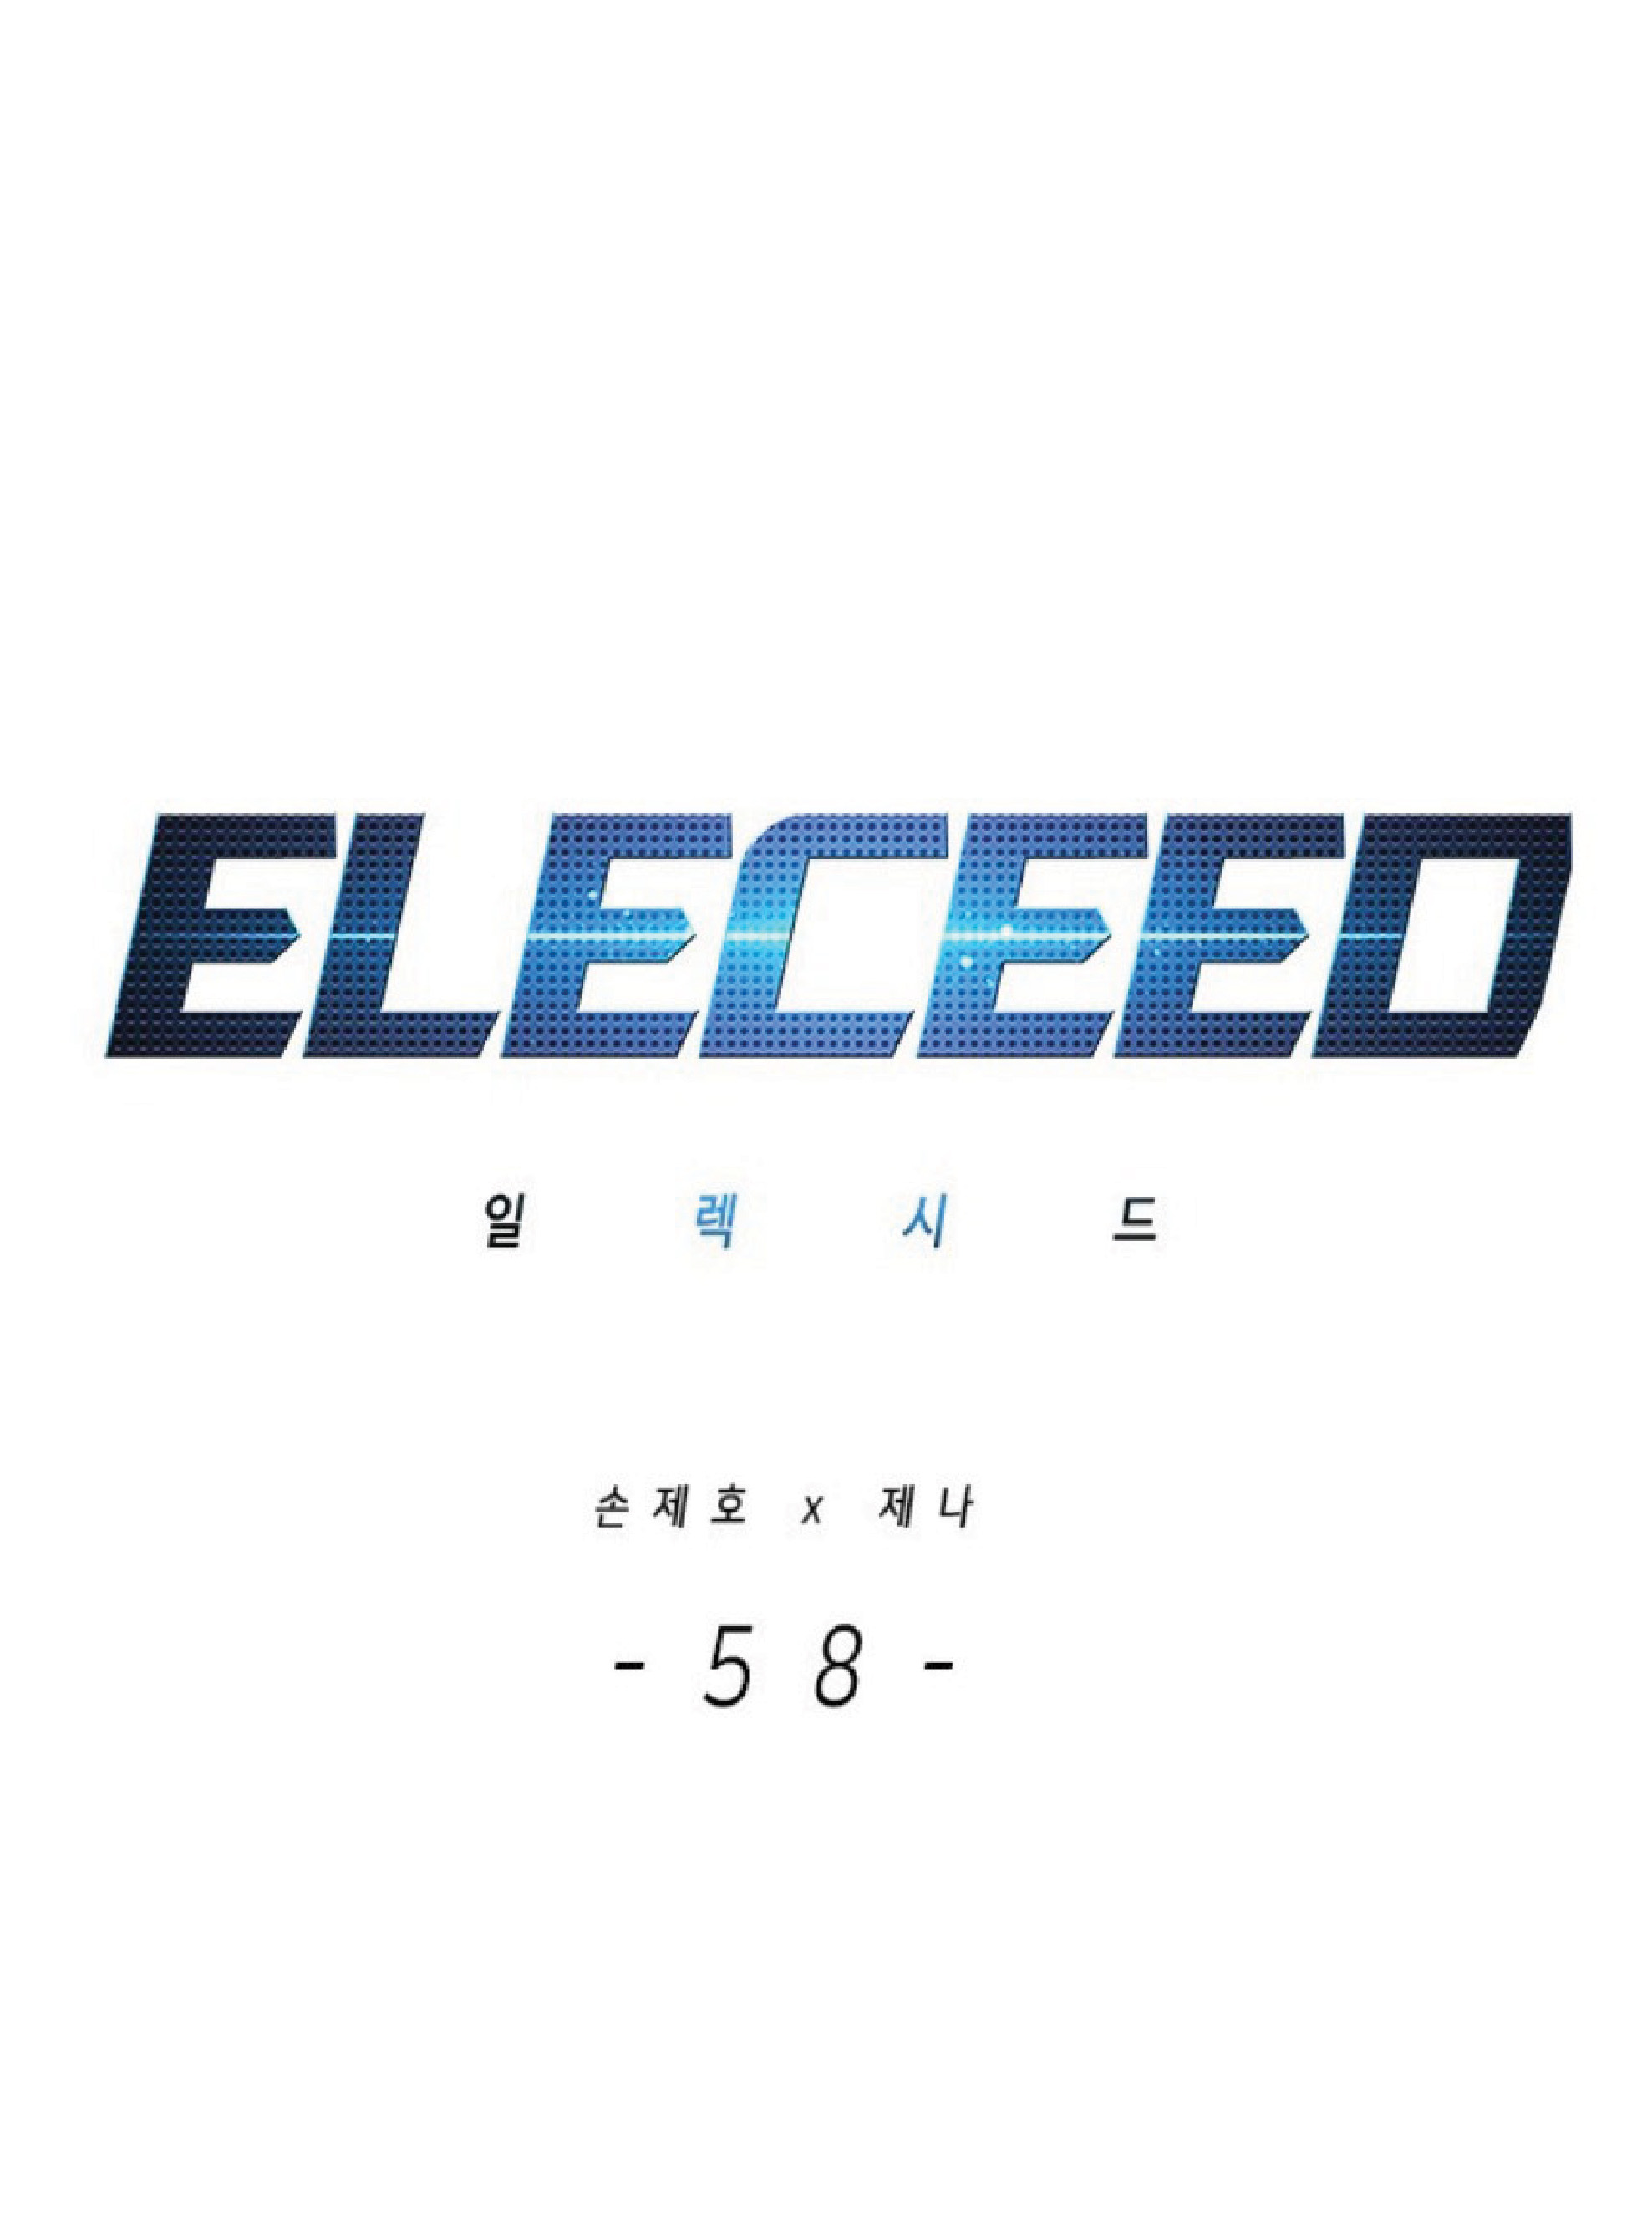 eleceed58 01